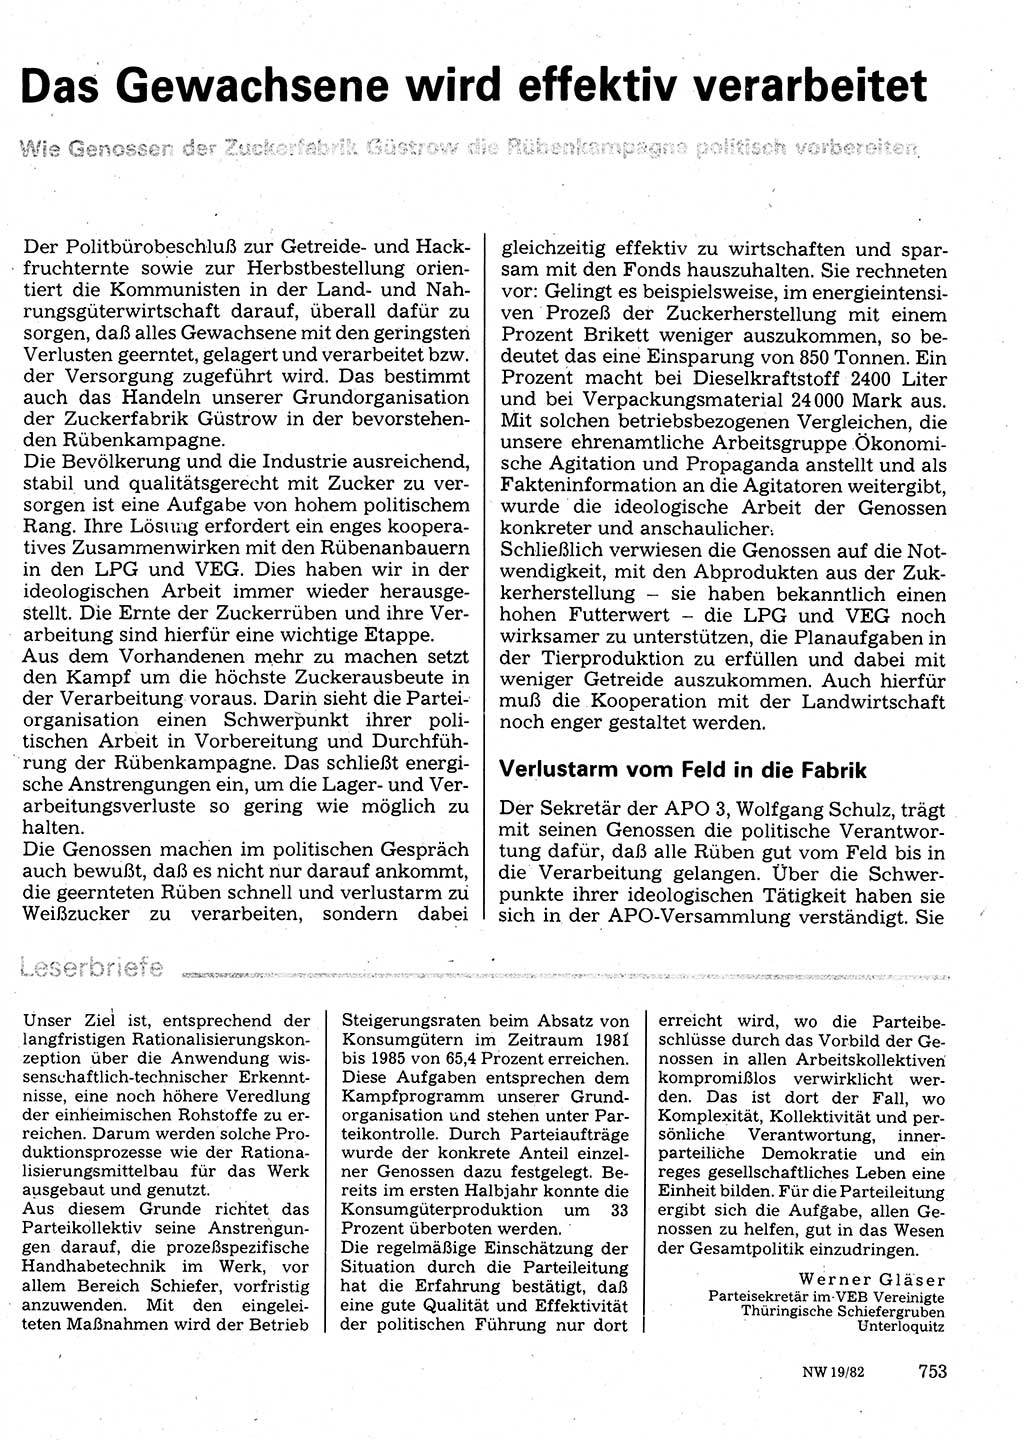 Neuer Weg (NW), Organ des Zentralkomitees (ZK) der SED (Sozialistische Einheitspartei Deutschlands) für Fragen des Parteilebens, 37. Jahrgang [Deutsche Demokratische Republik (DDR)] 1982, Seite 753 (NW ZK SED DDR 1982, S. 753)